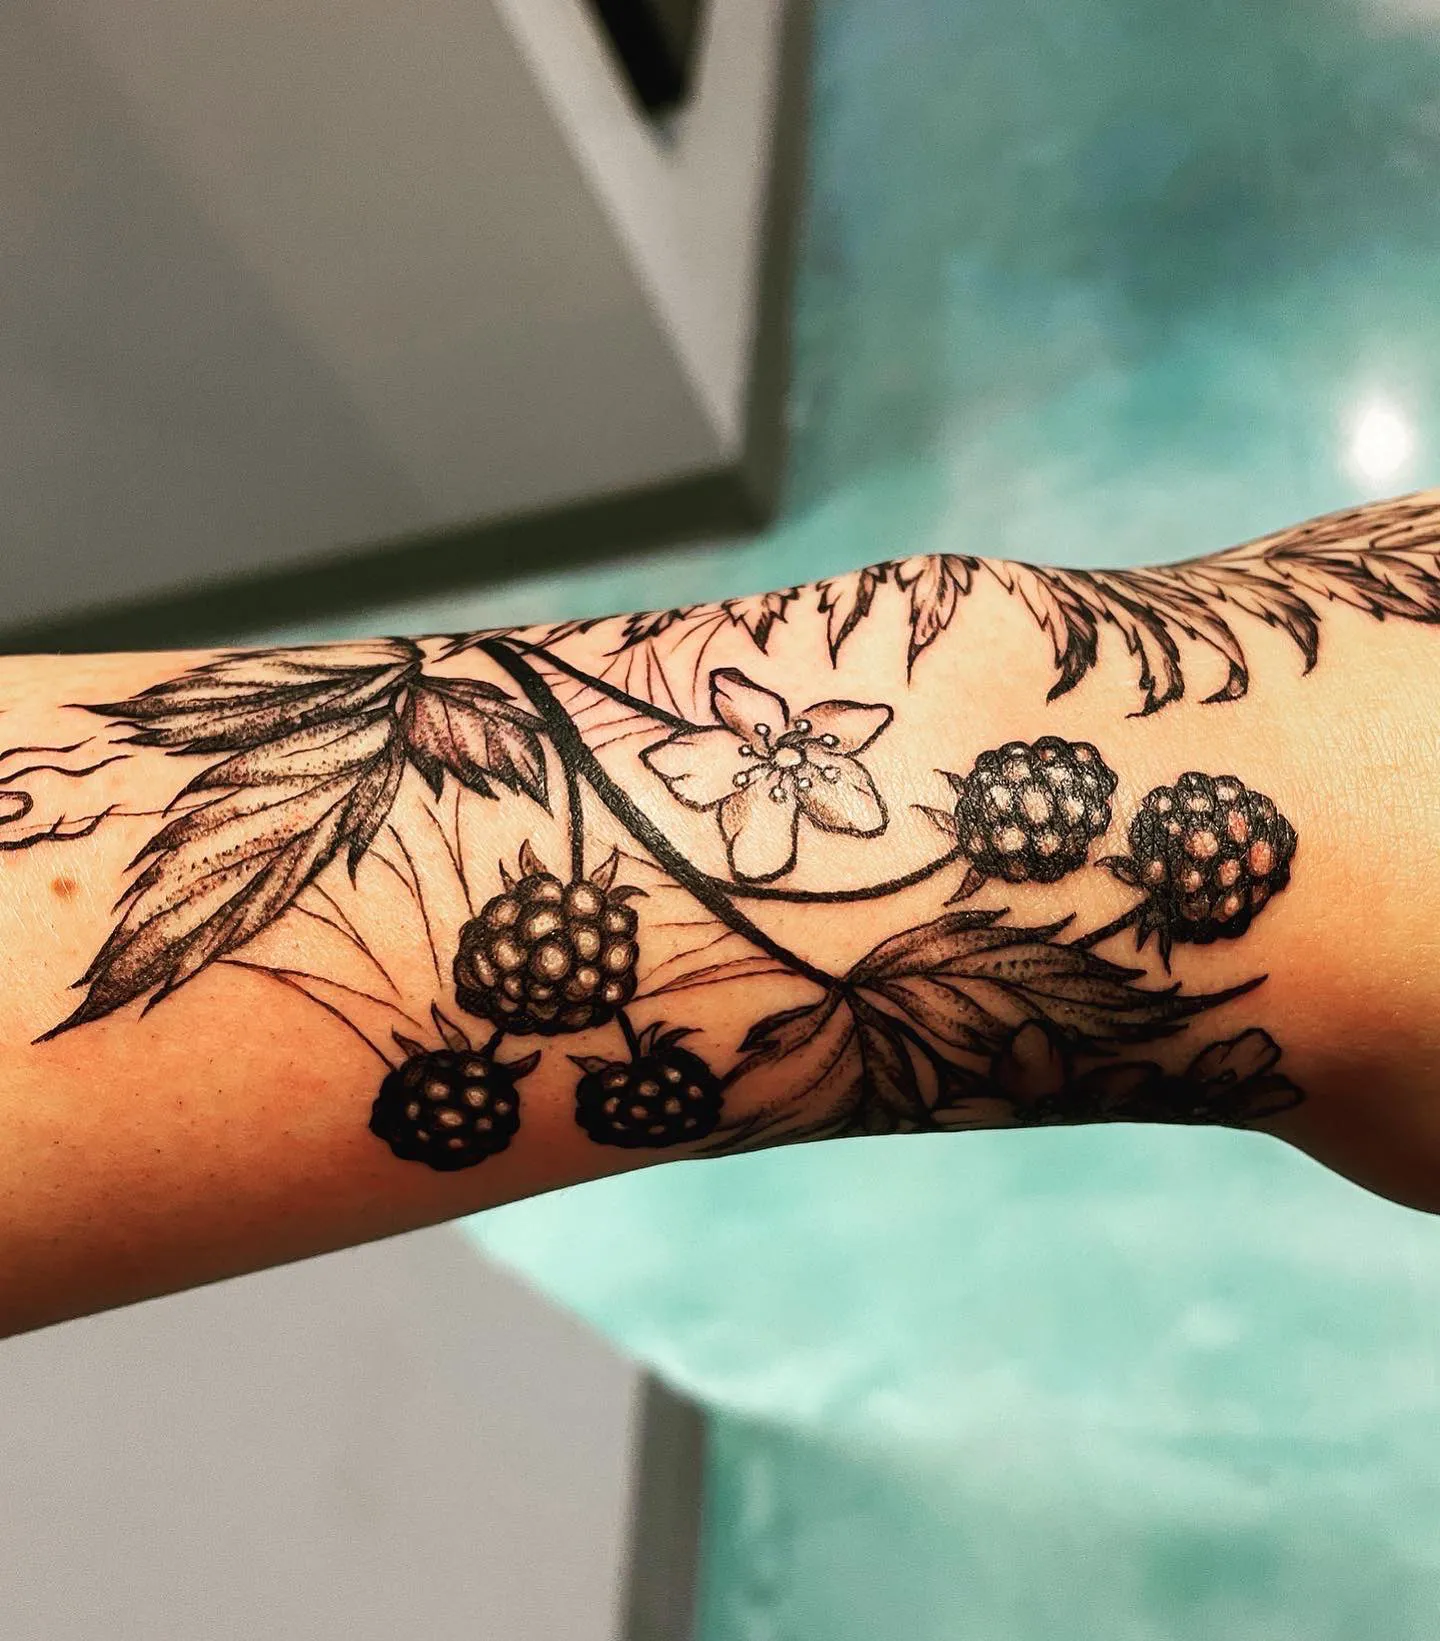 Rich blackberry vine tattoo on wrist